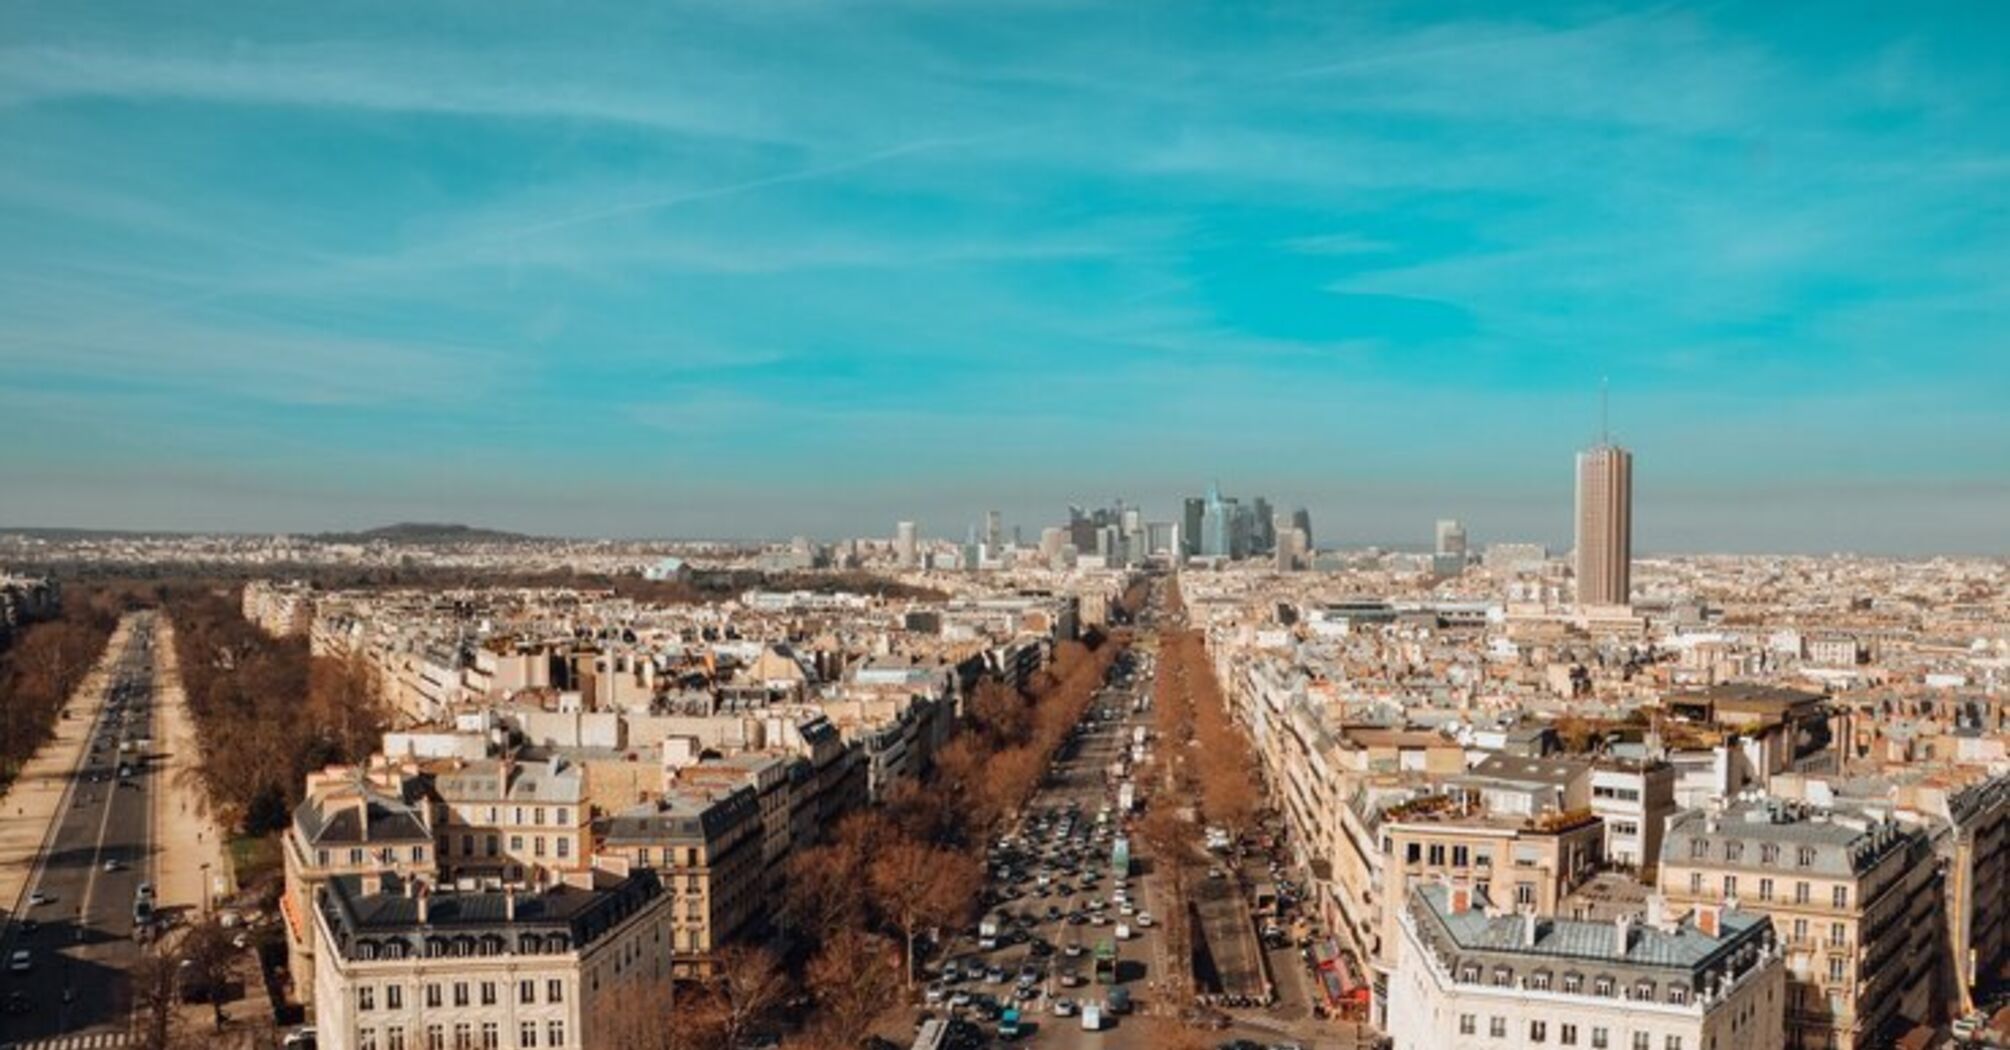 Не Эйфелевой башней единственной: топ-5 скрытых жемчужин Парижа